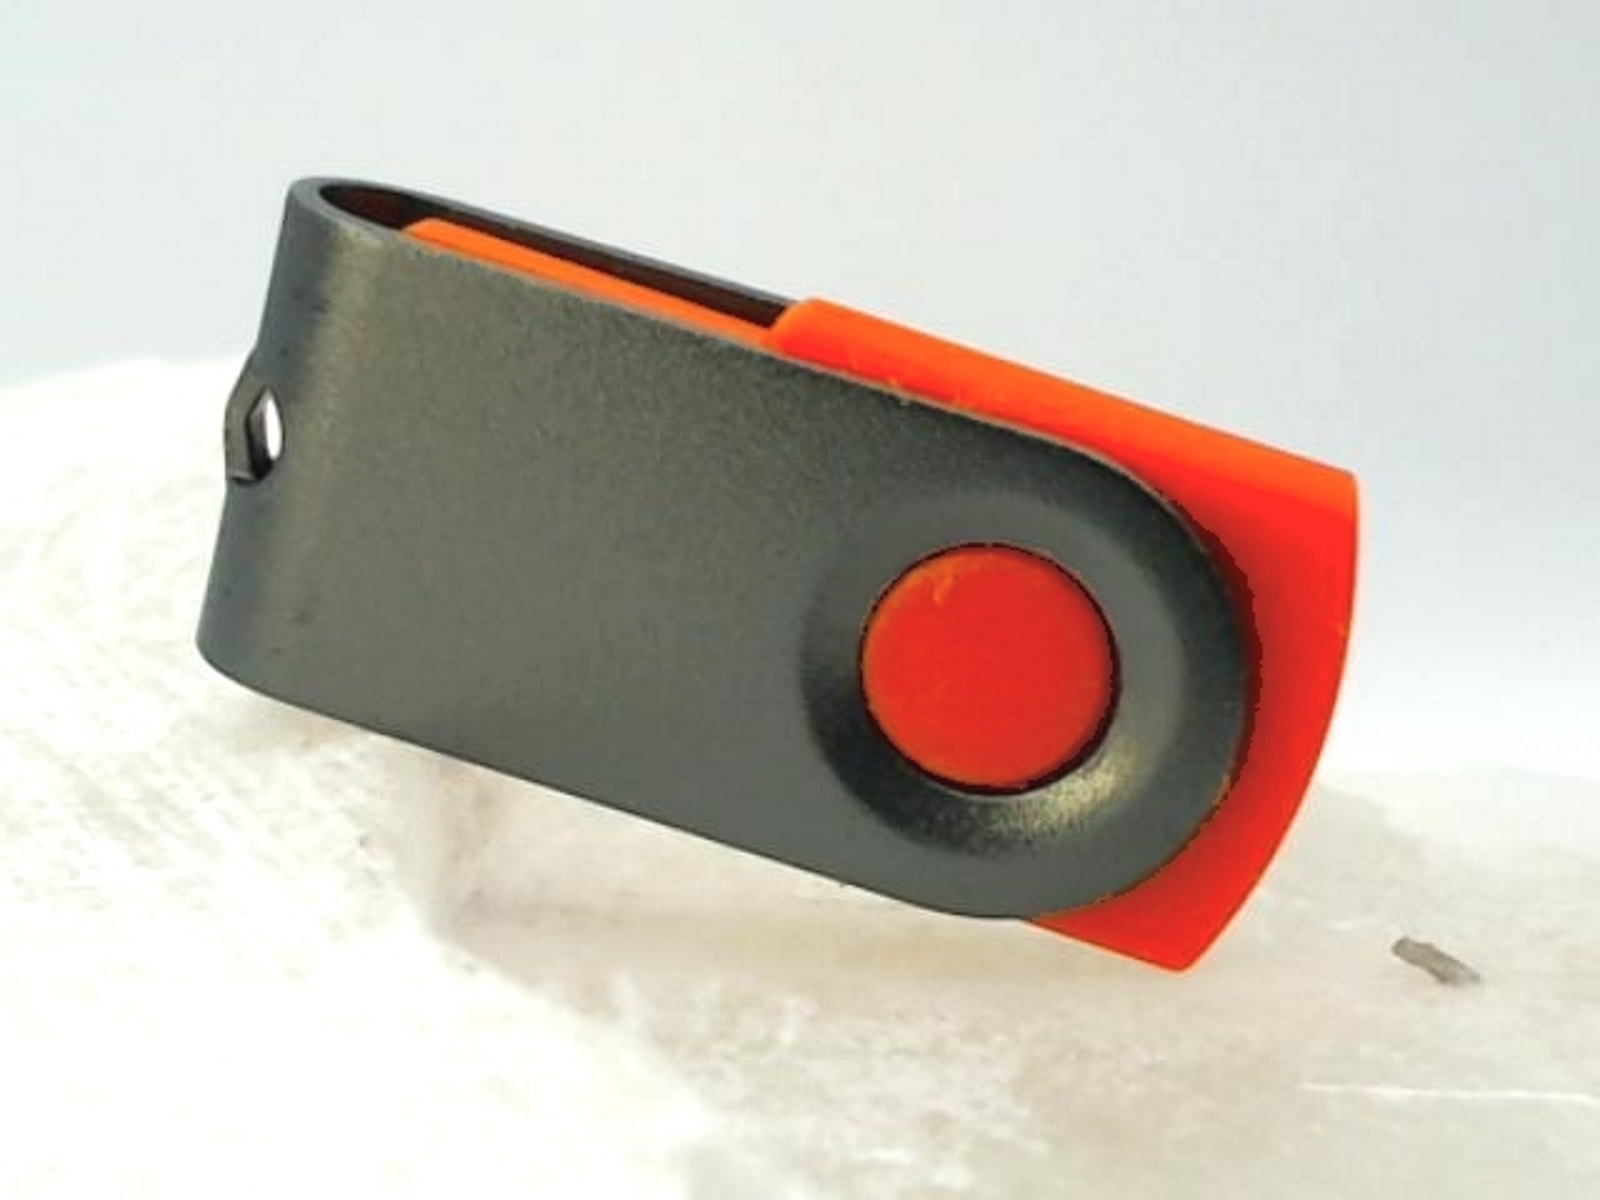 USB GERMANY ® MINI-SWIVEL GB) 1 USB-Stick (Rot-Graumetall